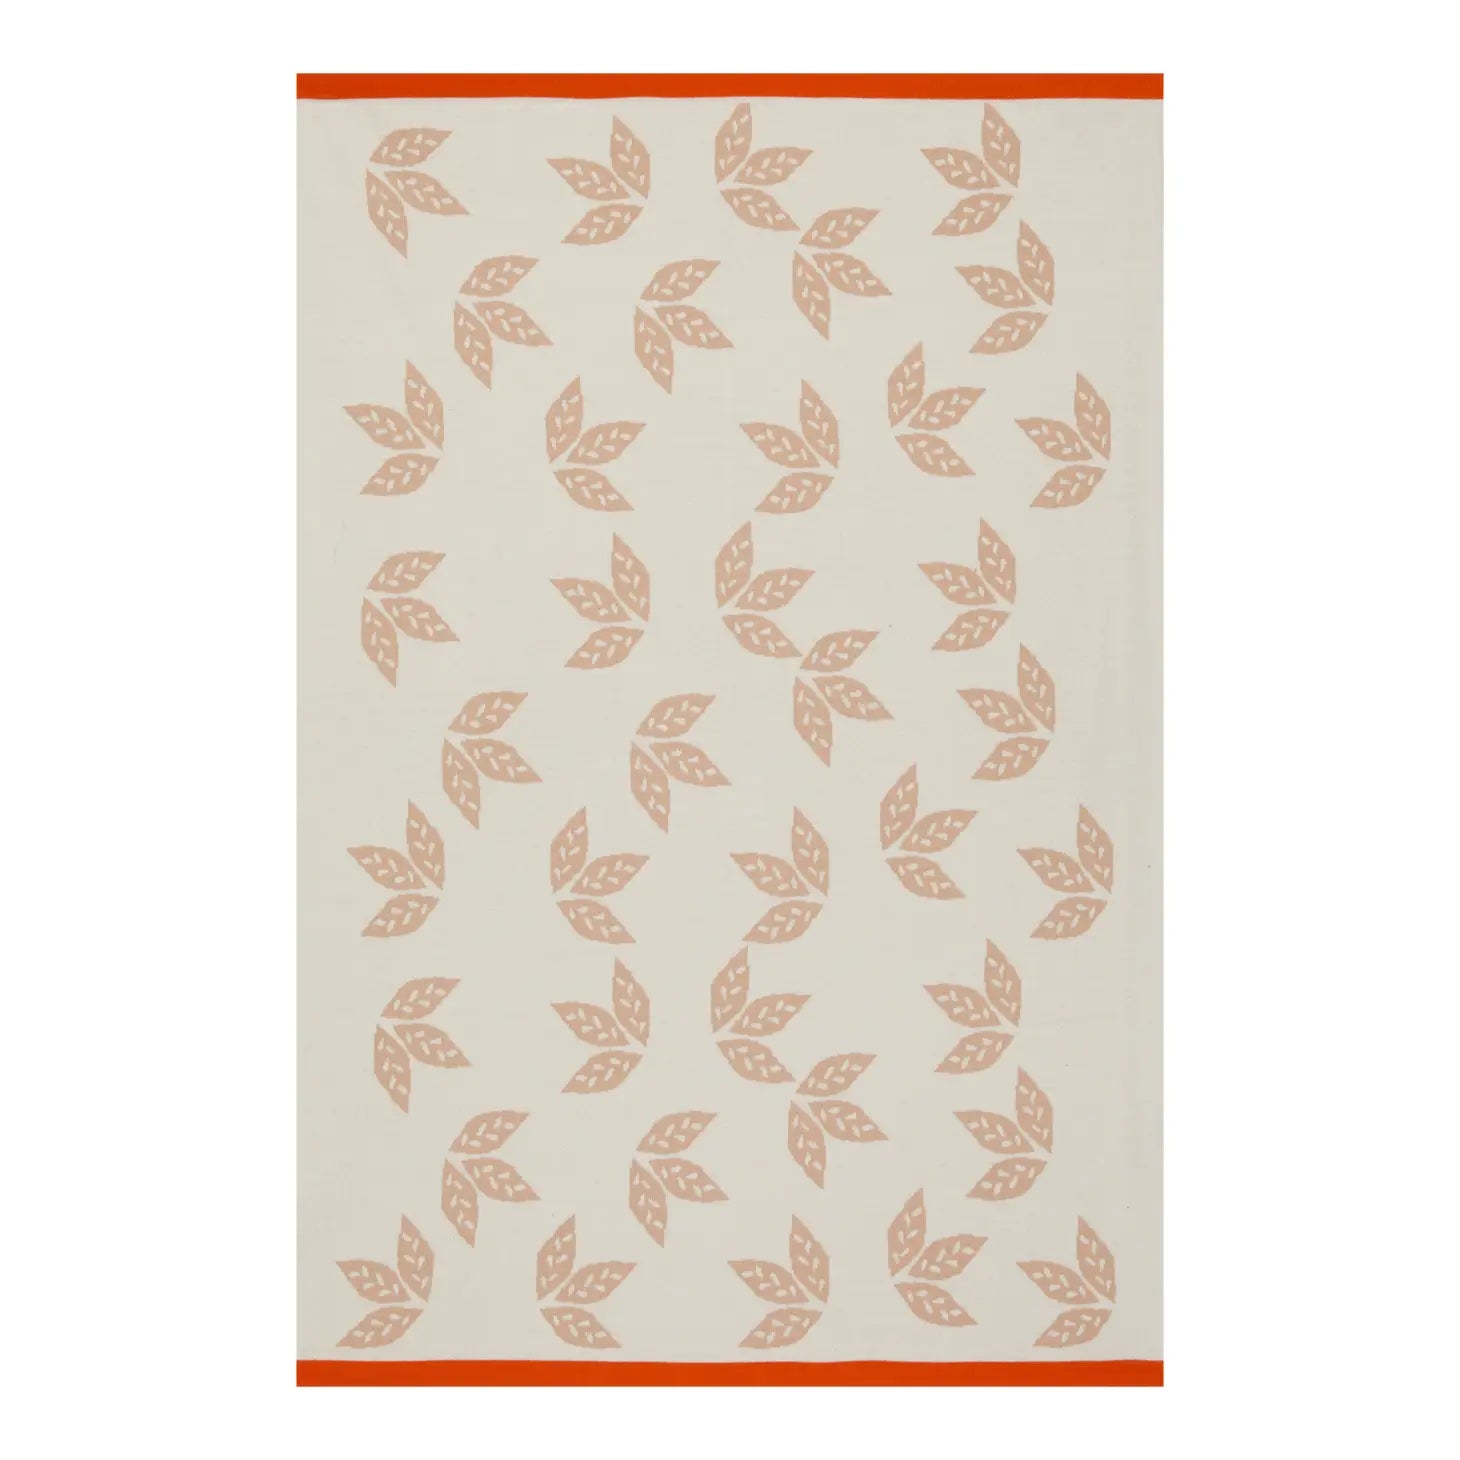 Cotton Knit Stroller/Pram Baby Blanket- Reversible Leaf Pink